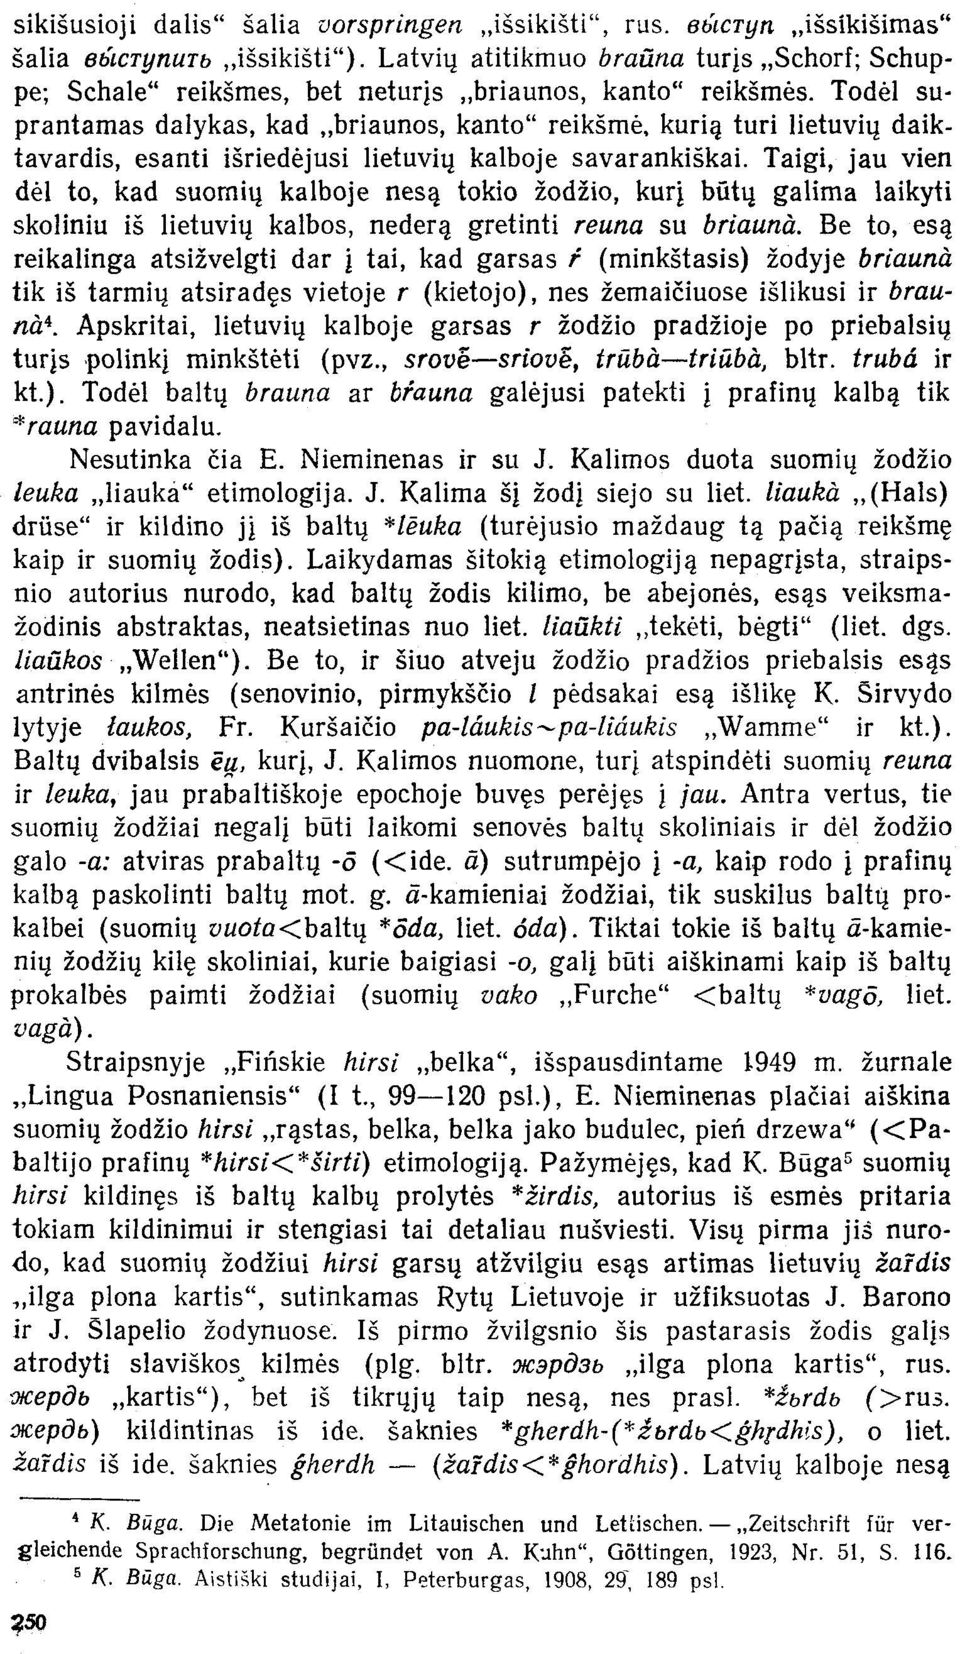 Todėl suprantamas dalykas, kad briaunos, kanto" reikšmė, kurią turi lietuvių daiktavardis, esanti išriedėjusi lietuvių kalboje savarankiškai.